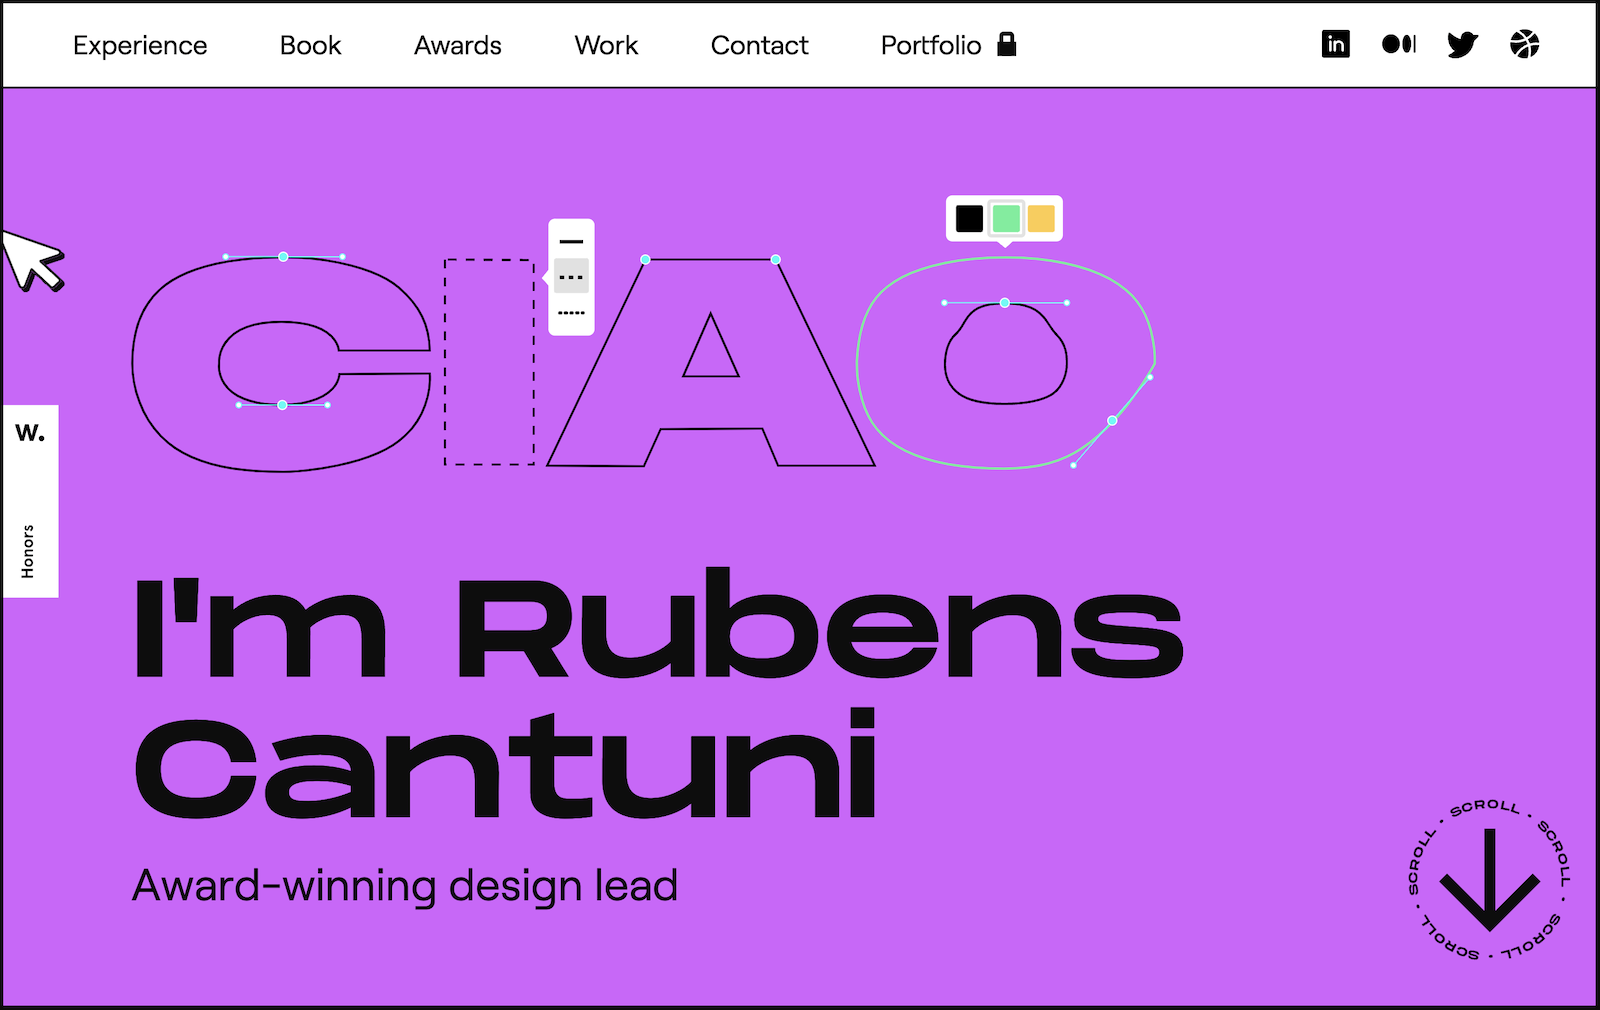 Osobista strona internetowa Rubensa Cantuni pokazuje jego doświadczenie oraz portfolio projektów.